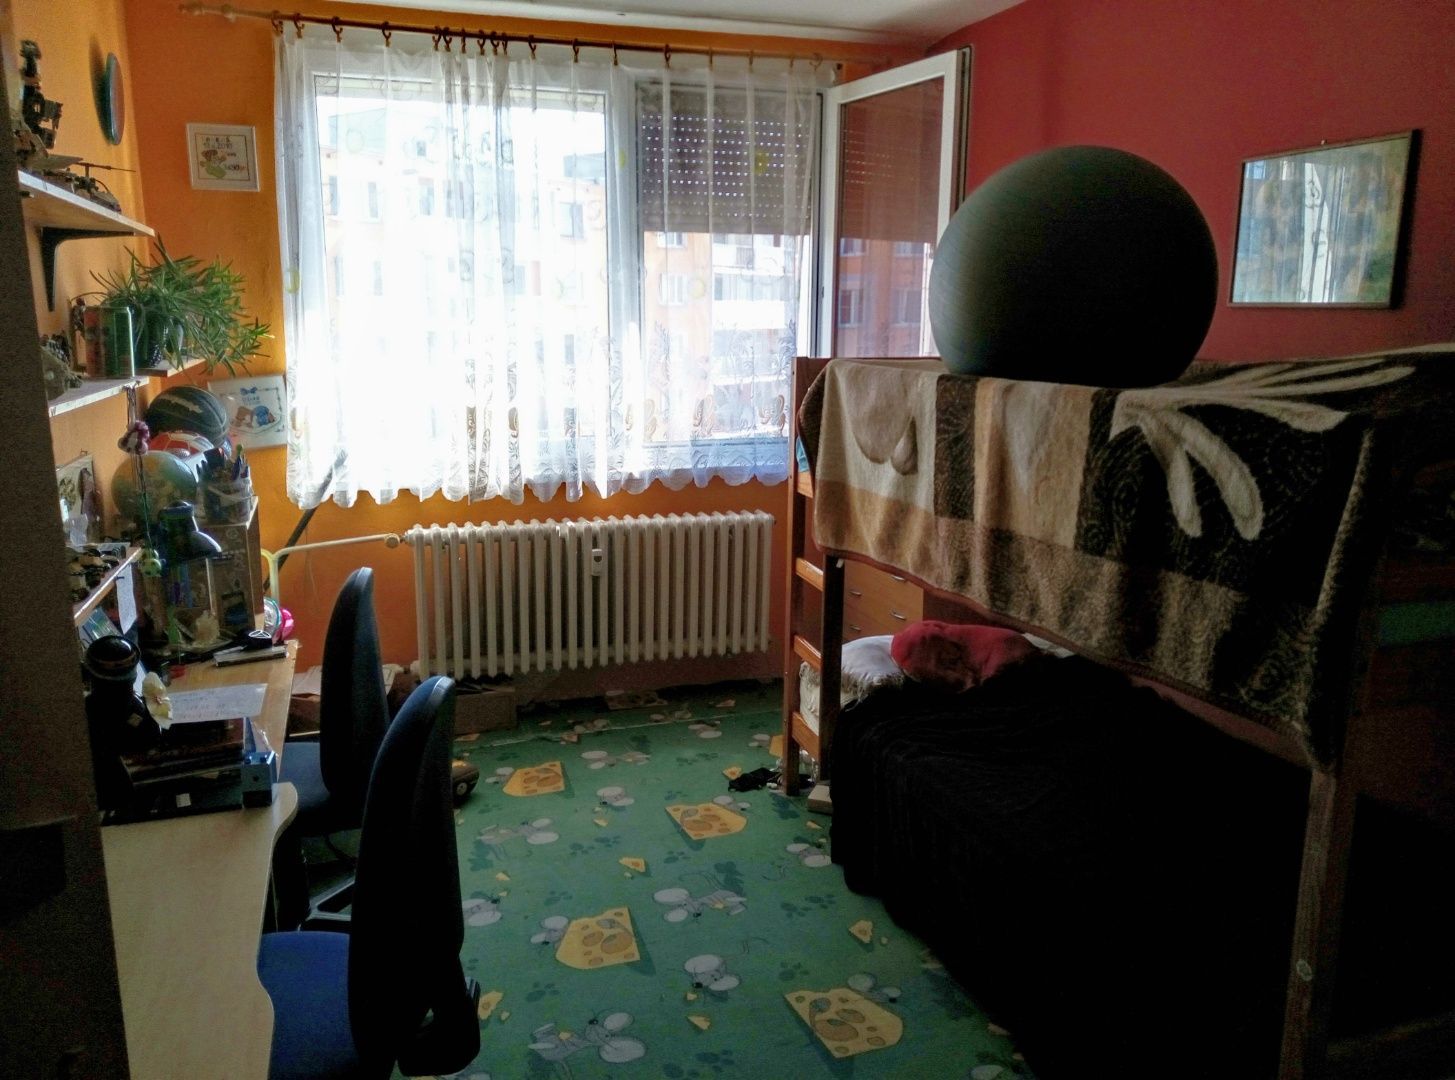 ZNÍŽENÁ CENA - TOP PONUKA!!! - Na predaj veľký 4-izbový byt s rozlohou 92 m2 v meste Košice (019-114-IVP)